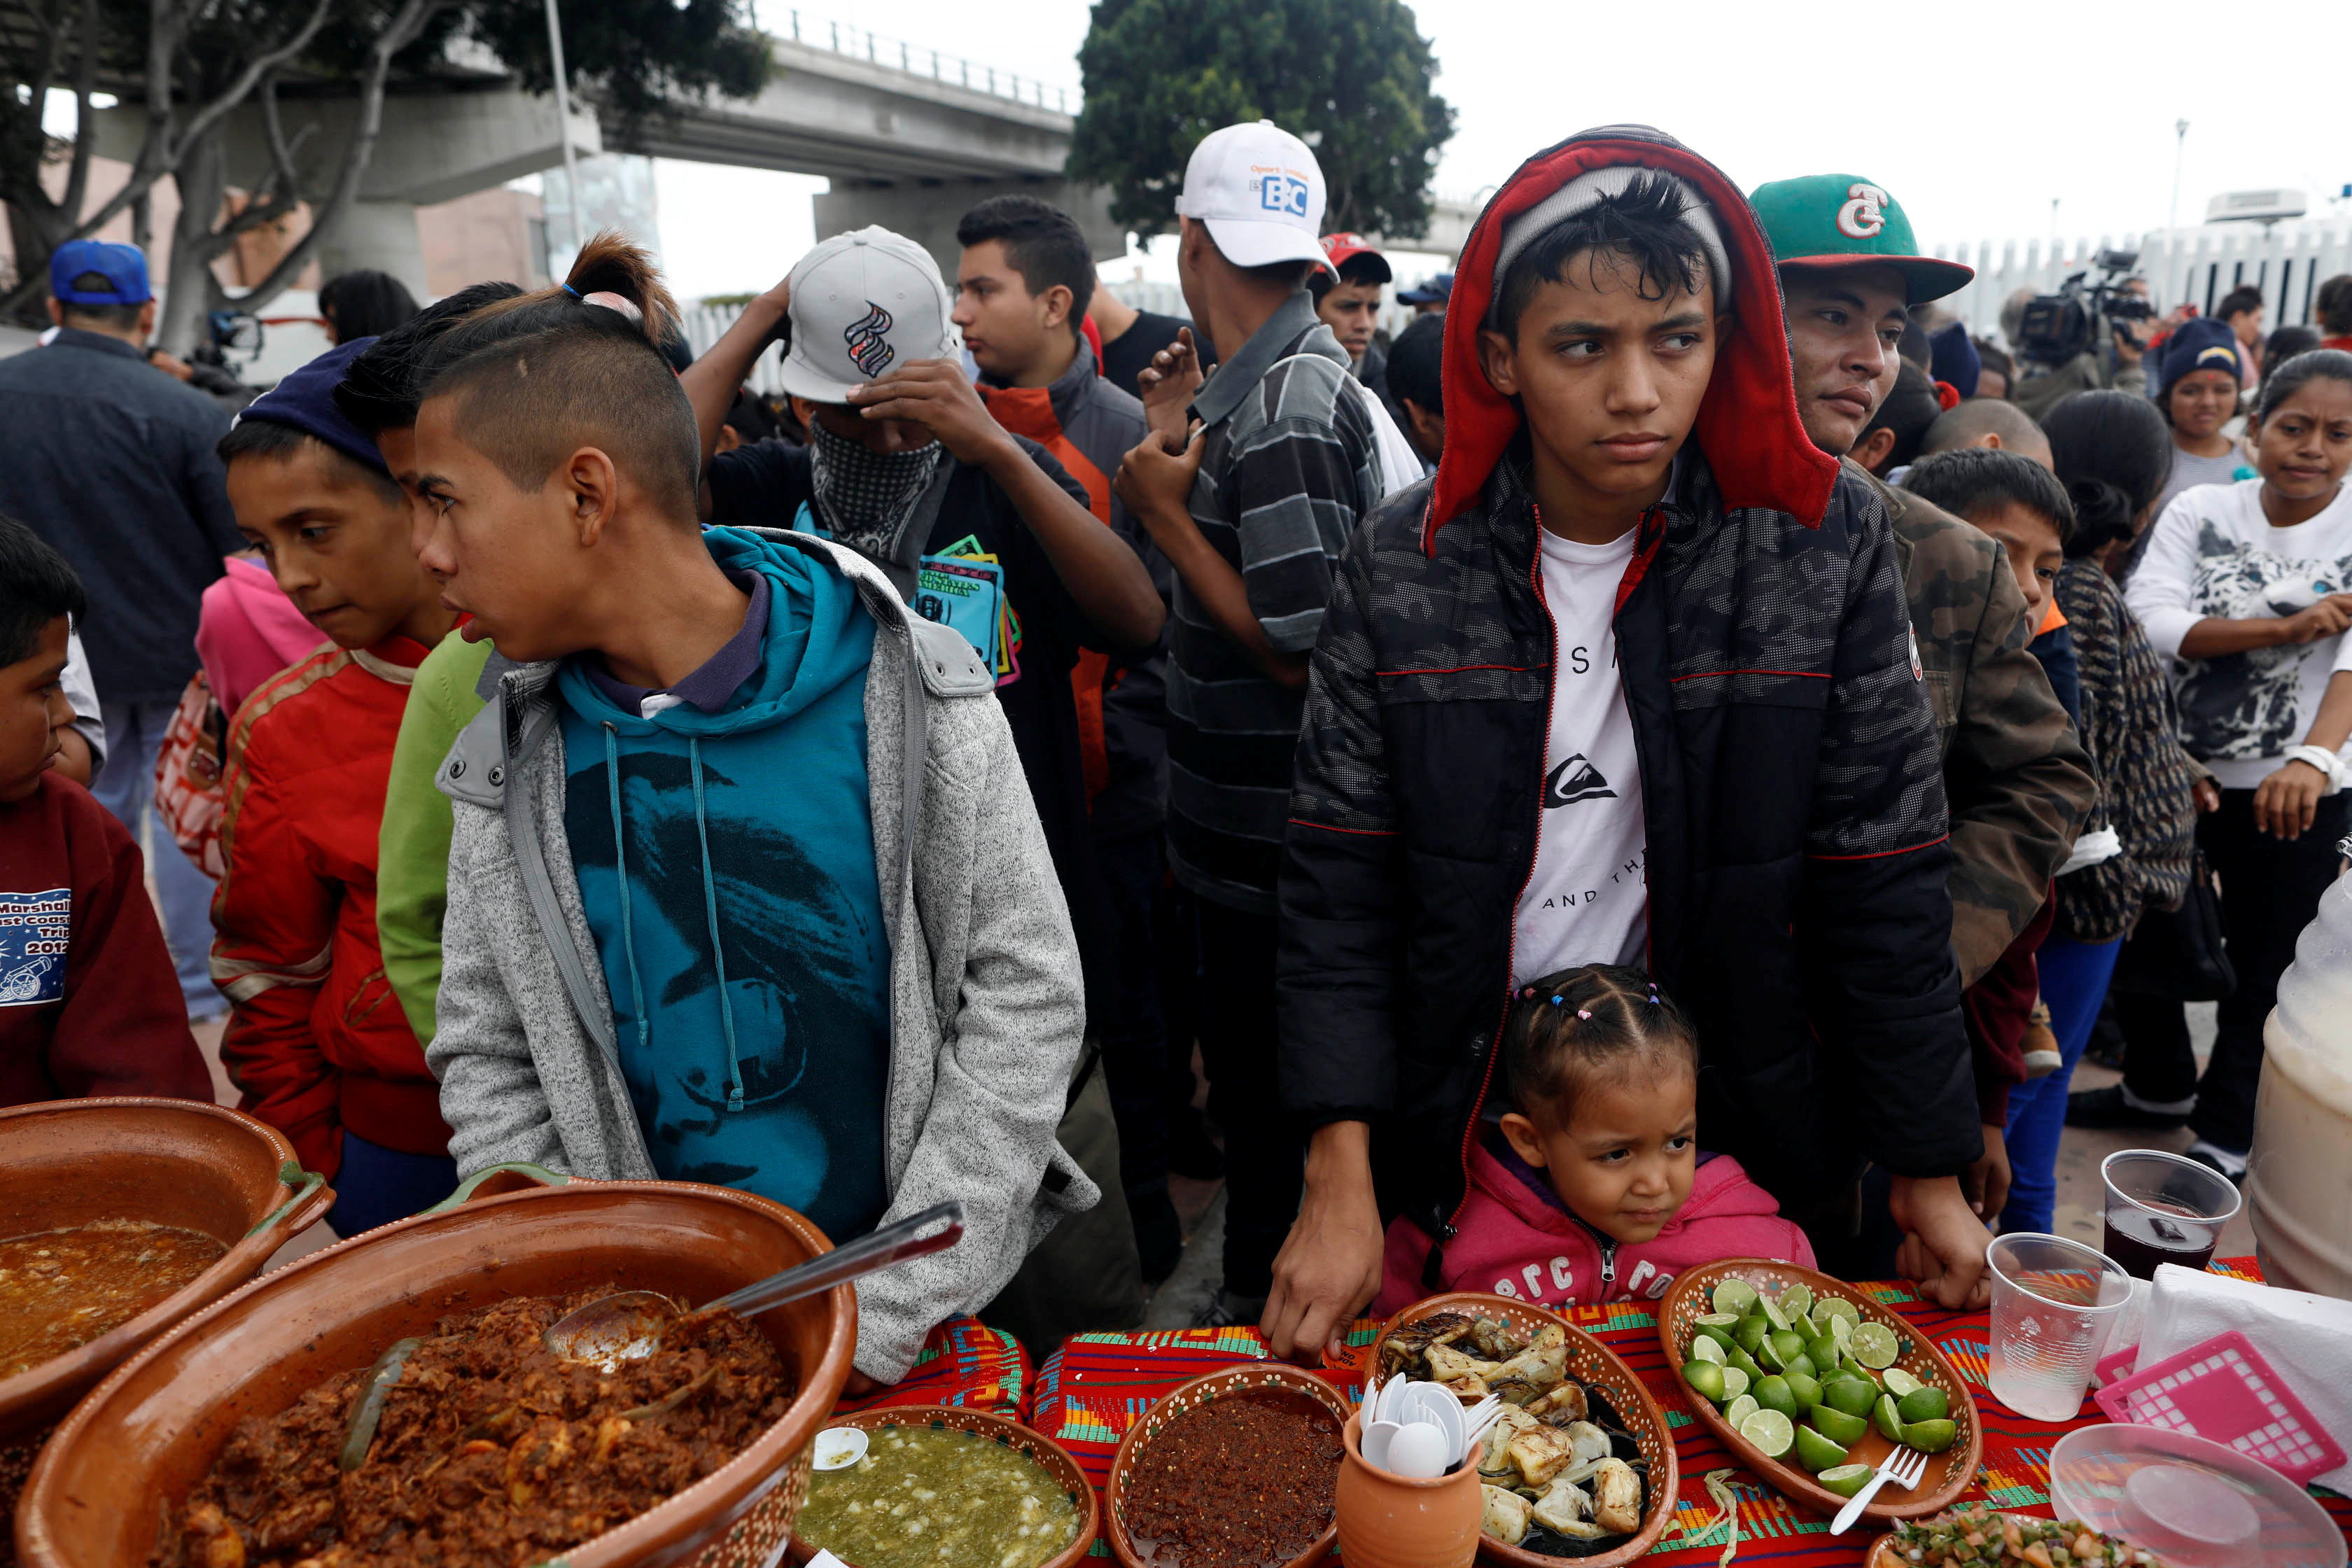 Membros da caravana de imigrantes que cruzaram a fronteira dos EUA com México recebem comida (Foto: Reuters)